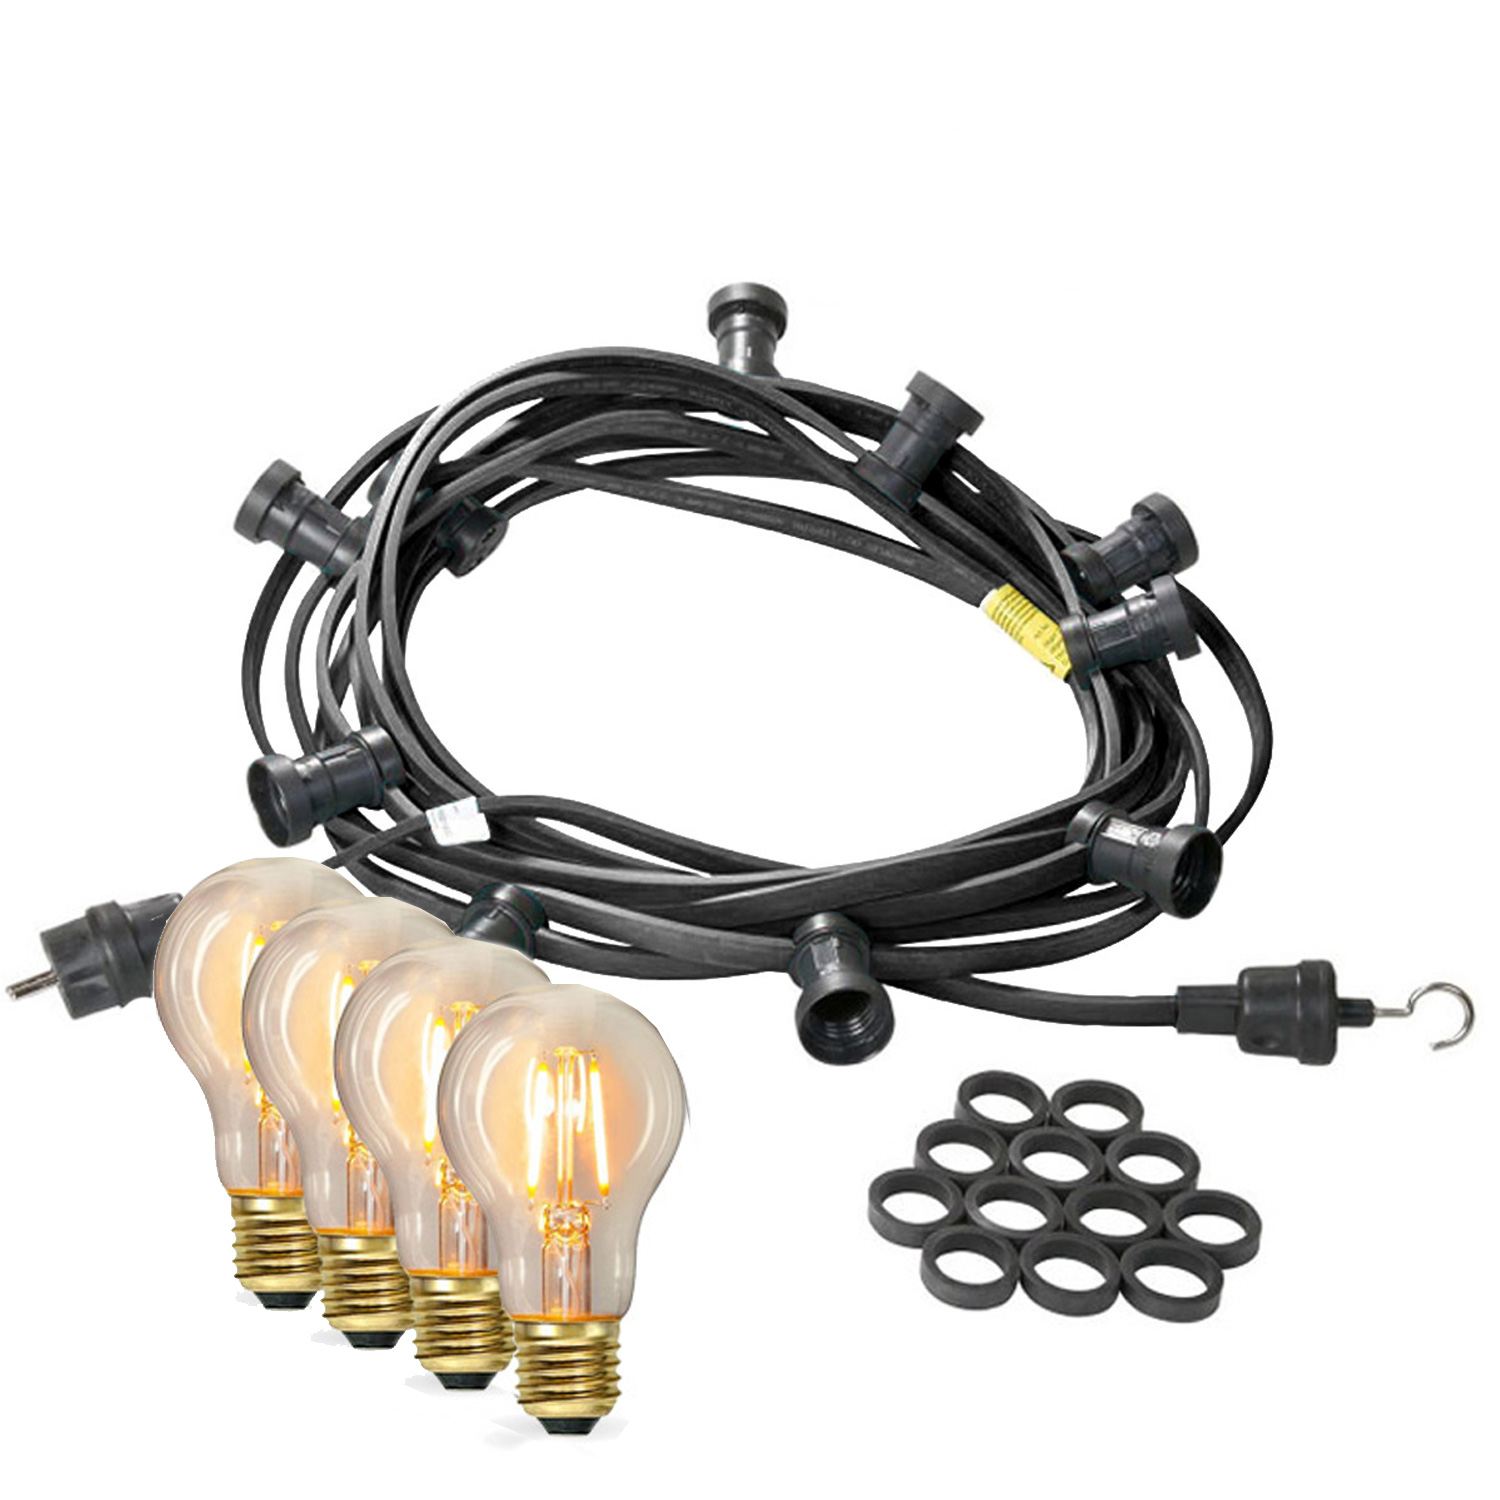 Illu-/Partylichterkette 40m - Außenlichterkette - Made in Germany - 60 x Edison LED Filamentlampen